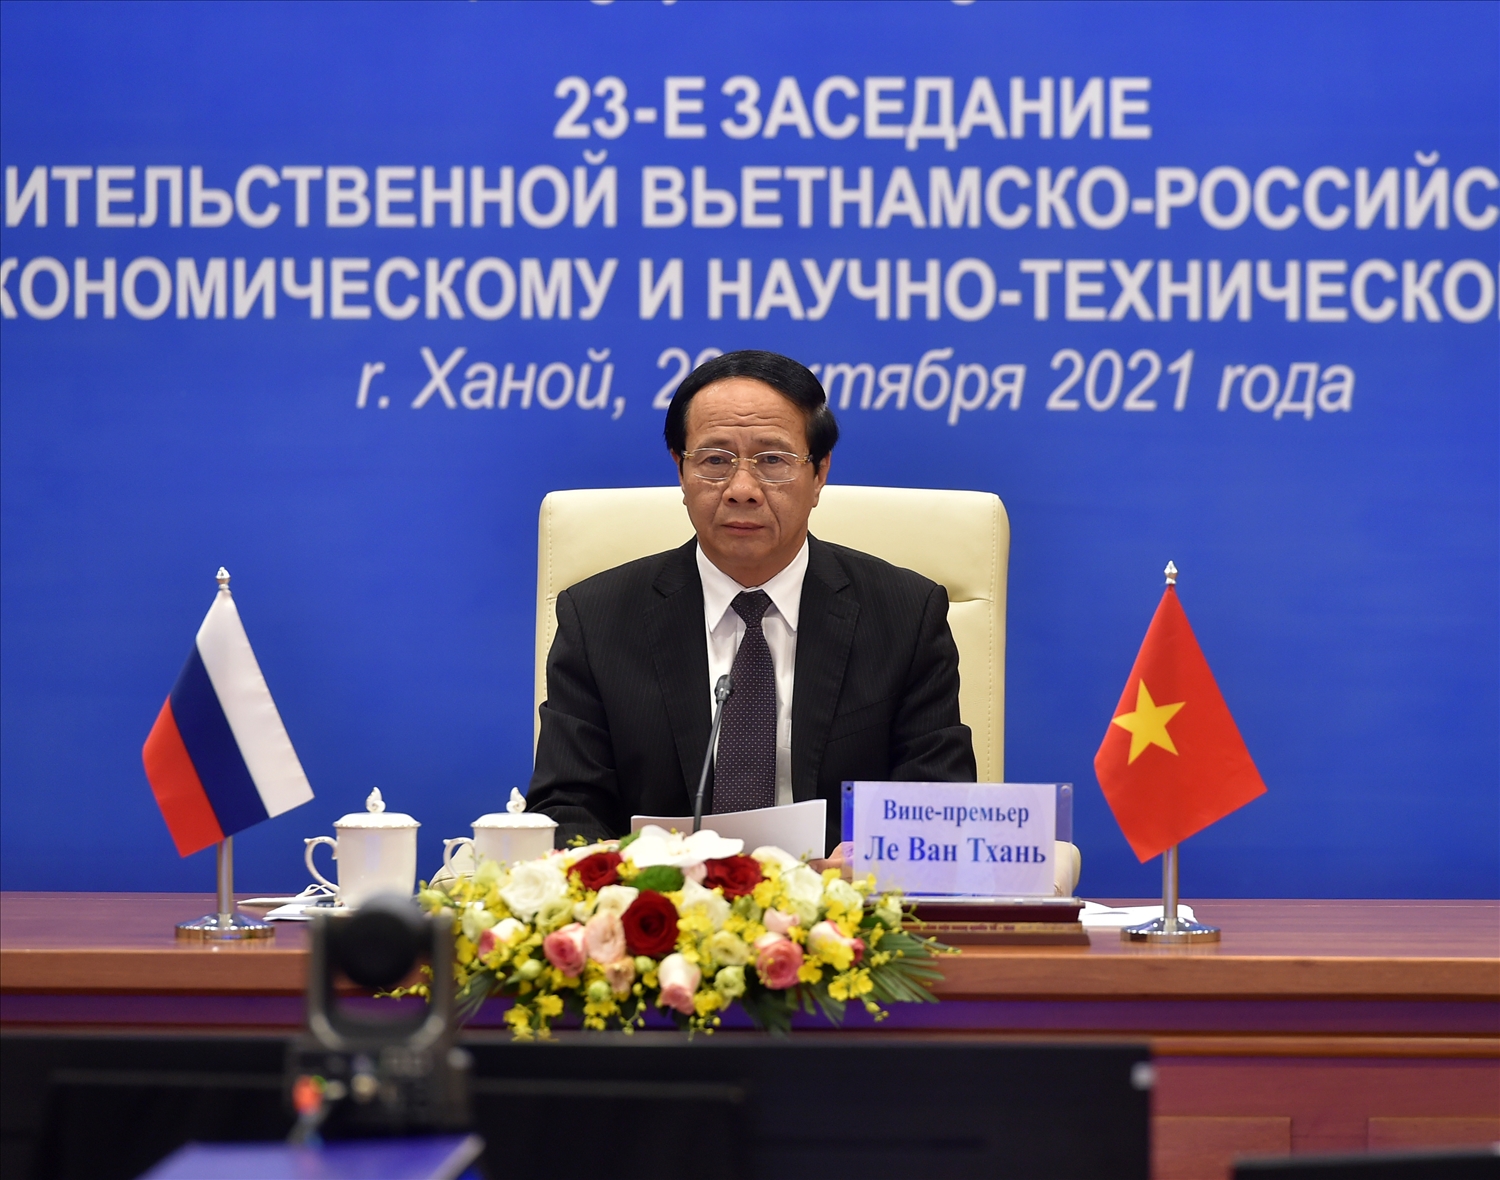 Phát biểu tại phiên toàn thể, Phó Thủ tướng Lê Văn Thành kẳng định Việt Nam coi trọng và mong muốn tăng cường hơn nữa hợp tác với Liên bang Nga - Ảnh VGP/Đức Tuân